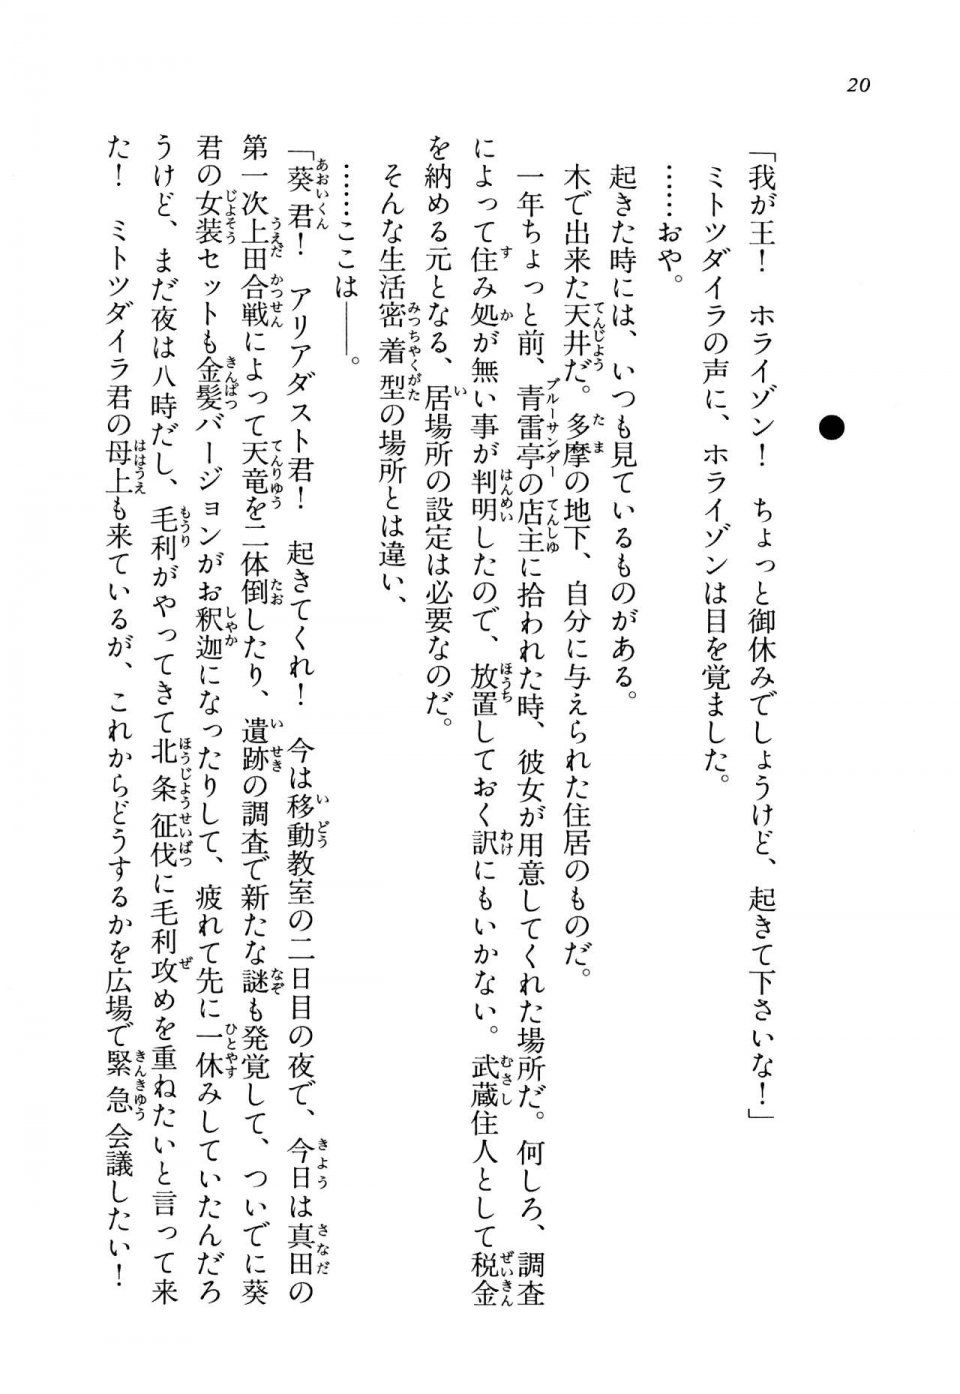 Kyoukai Senjou no Horizon LN Vol 13(6A) - Photo #20